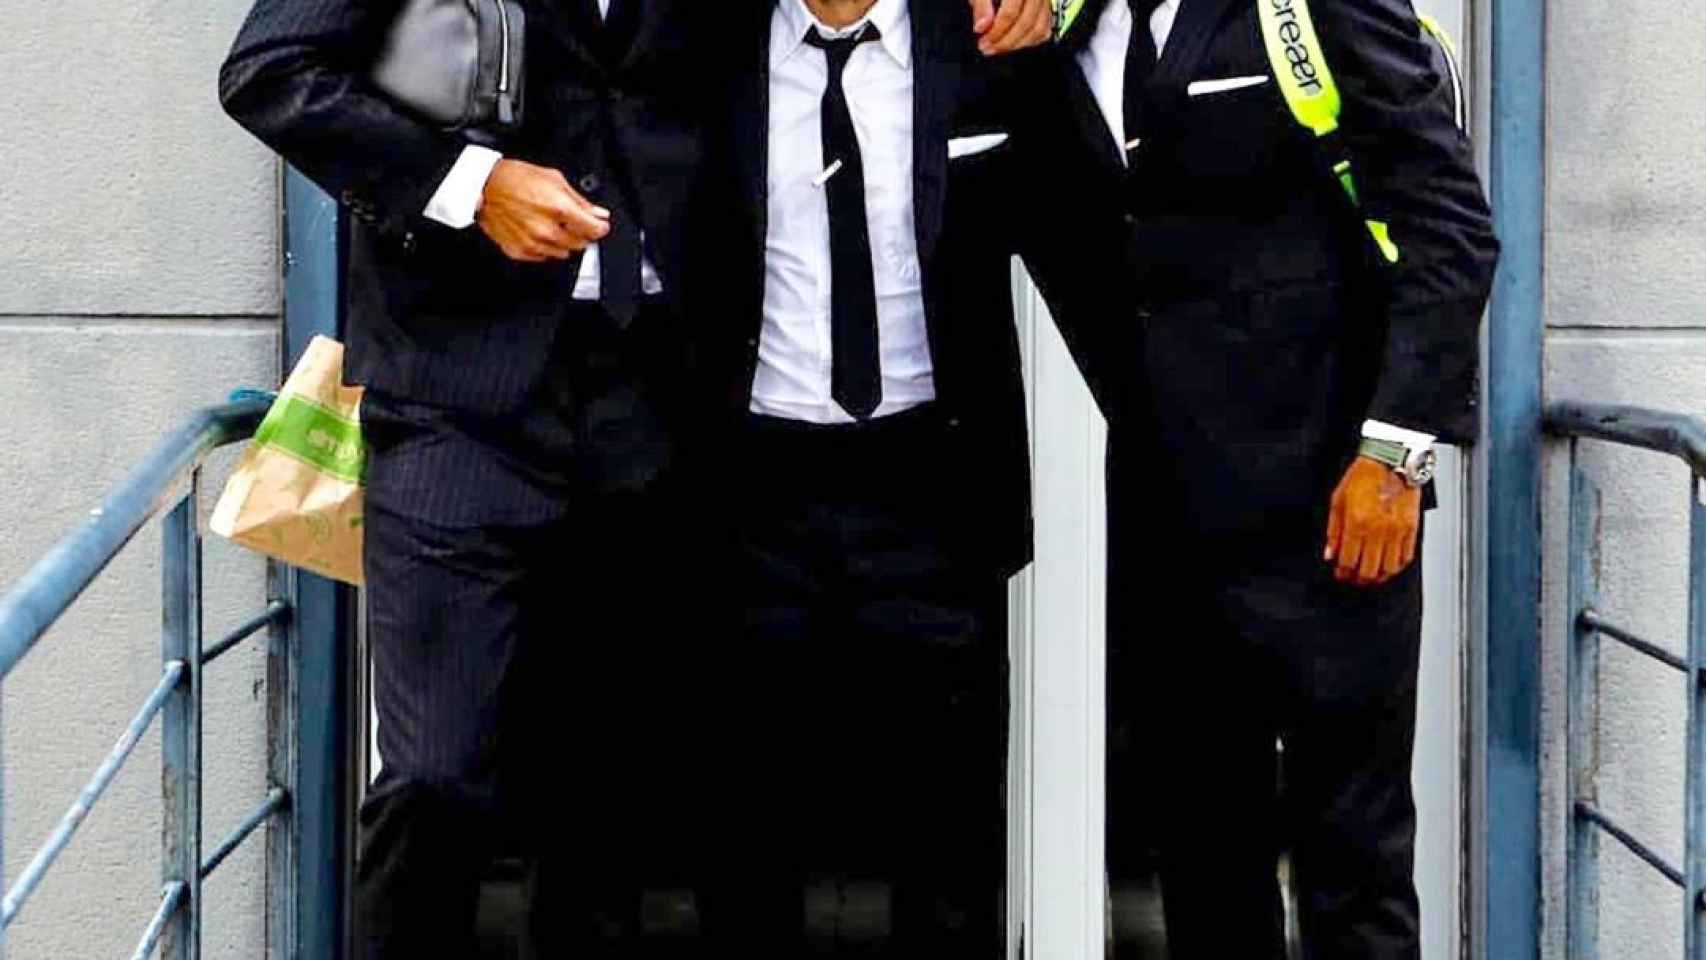 Gerard Piqué, Jordi Alba y Arturo Vidal en traje / FCB